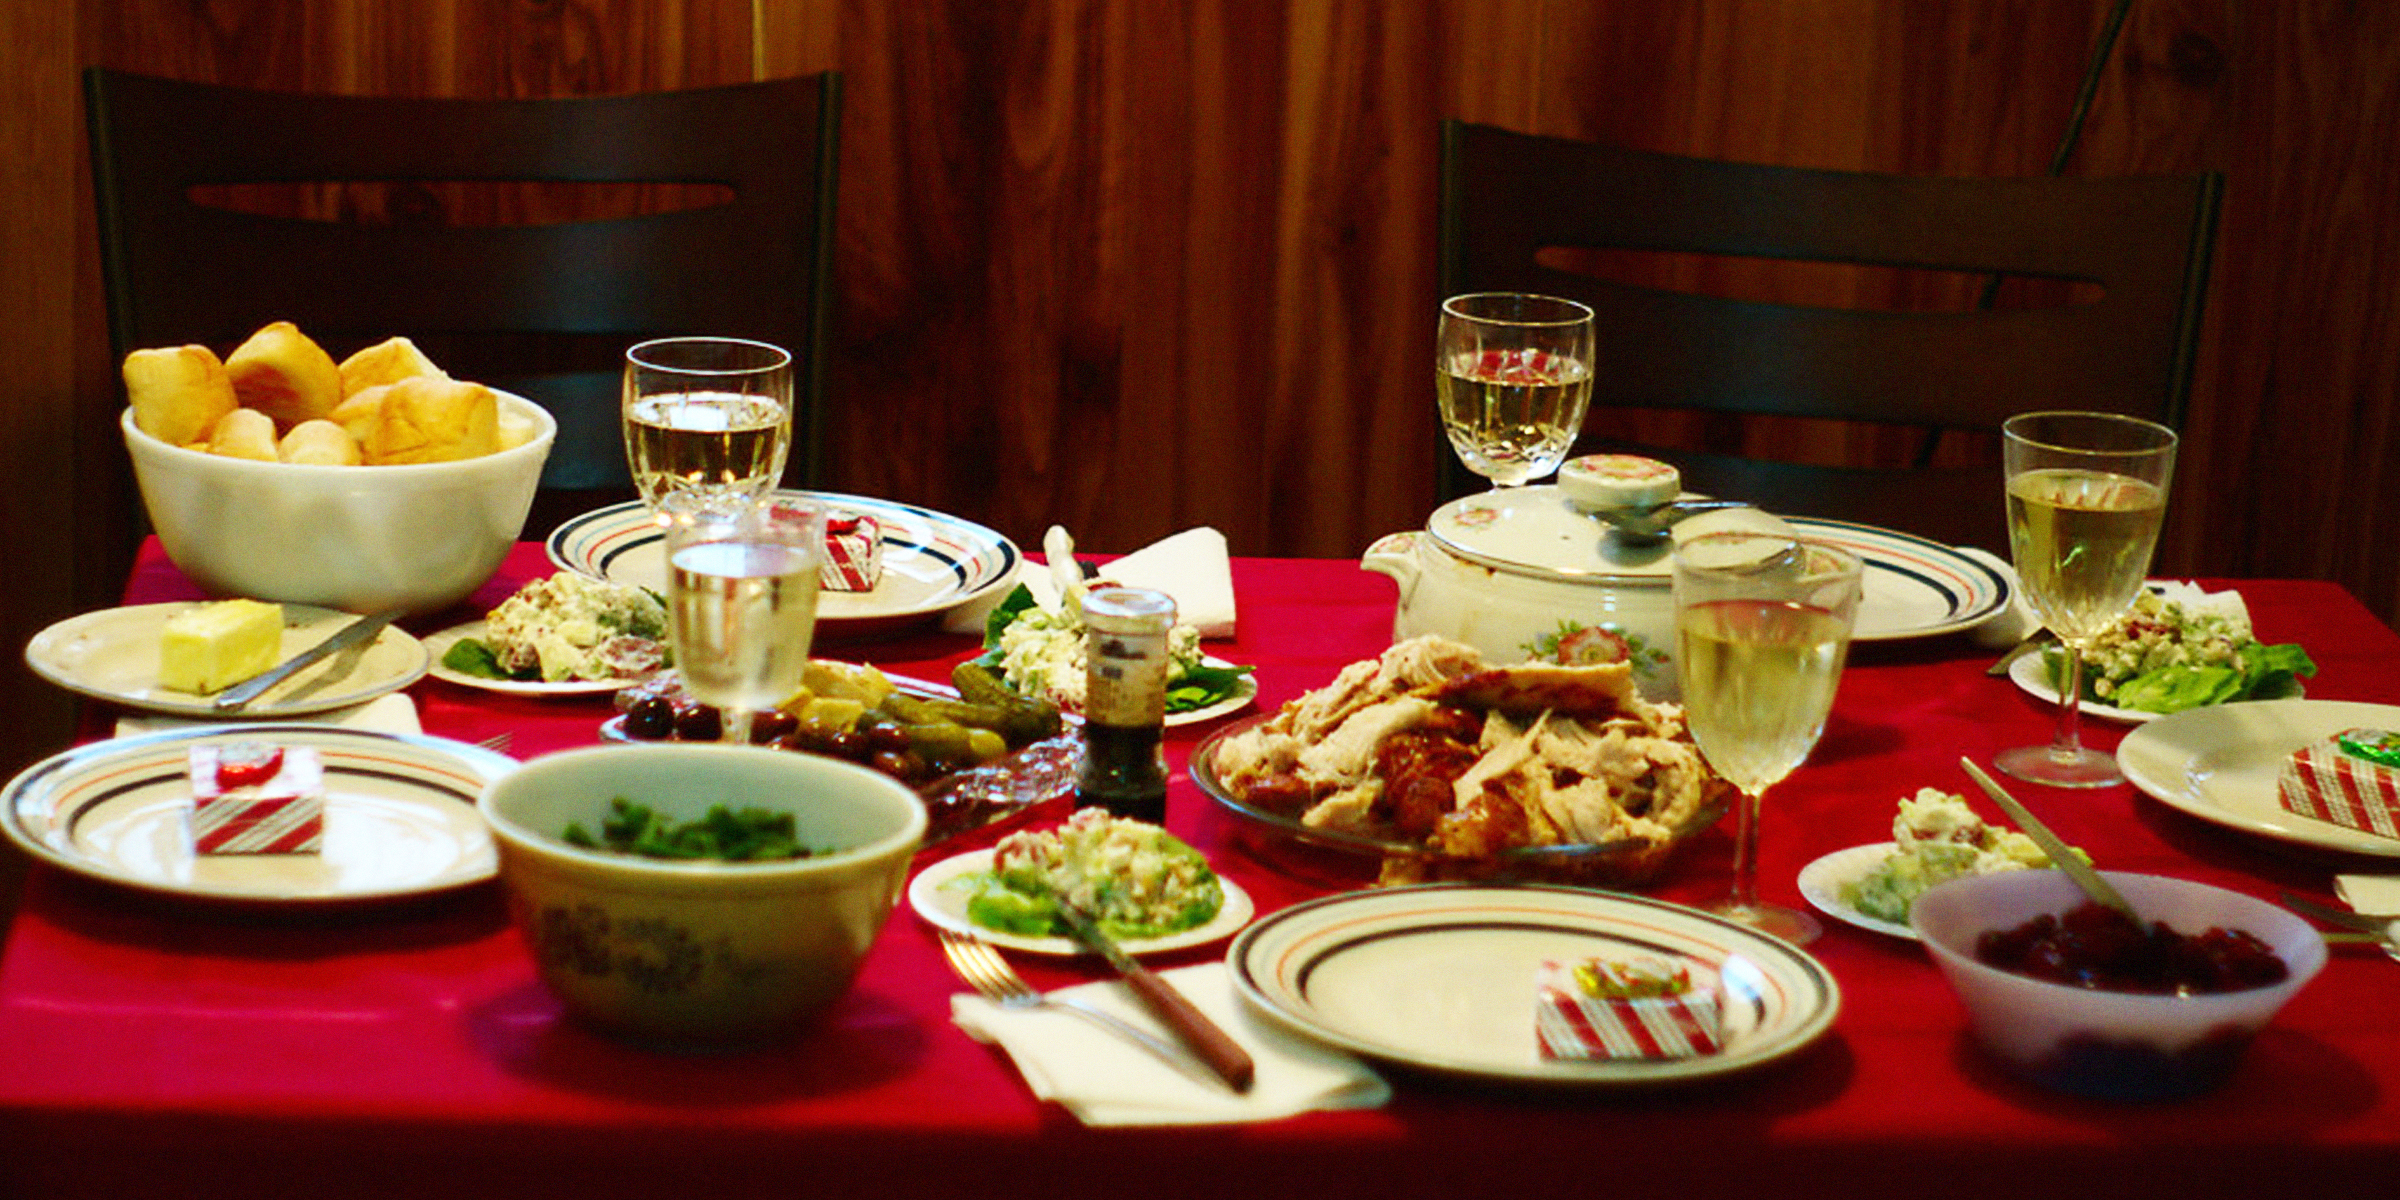 Table remplie de nourriture | Source : Flickr